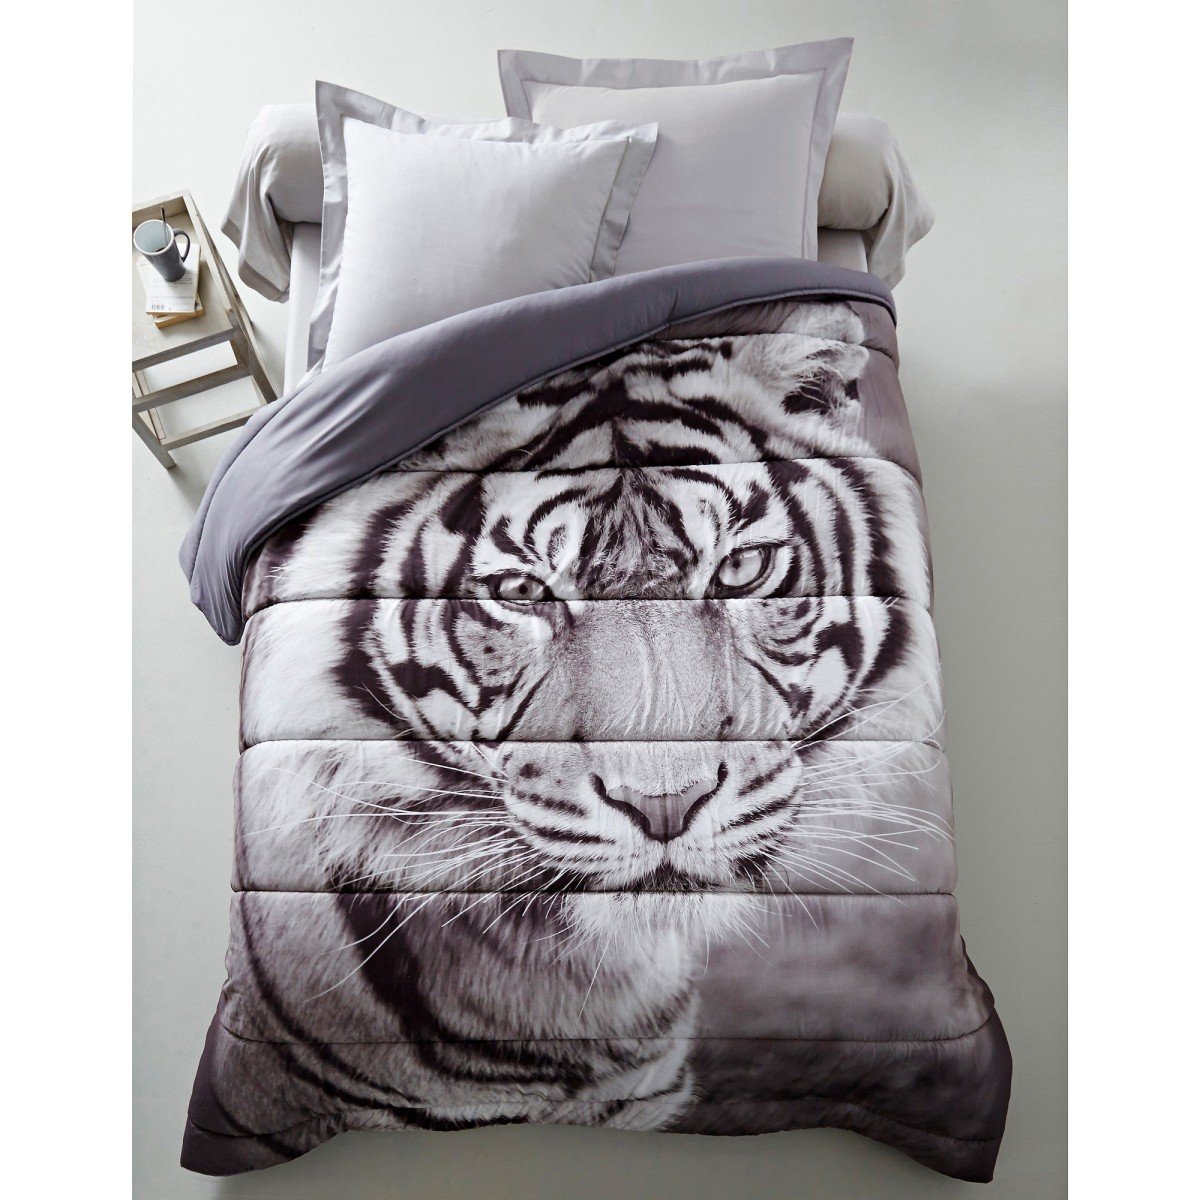 Prikrývka s fotopotlačou tigra, mikrovlákno 400g m2 biela sivá 140x200cm